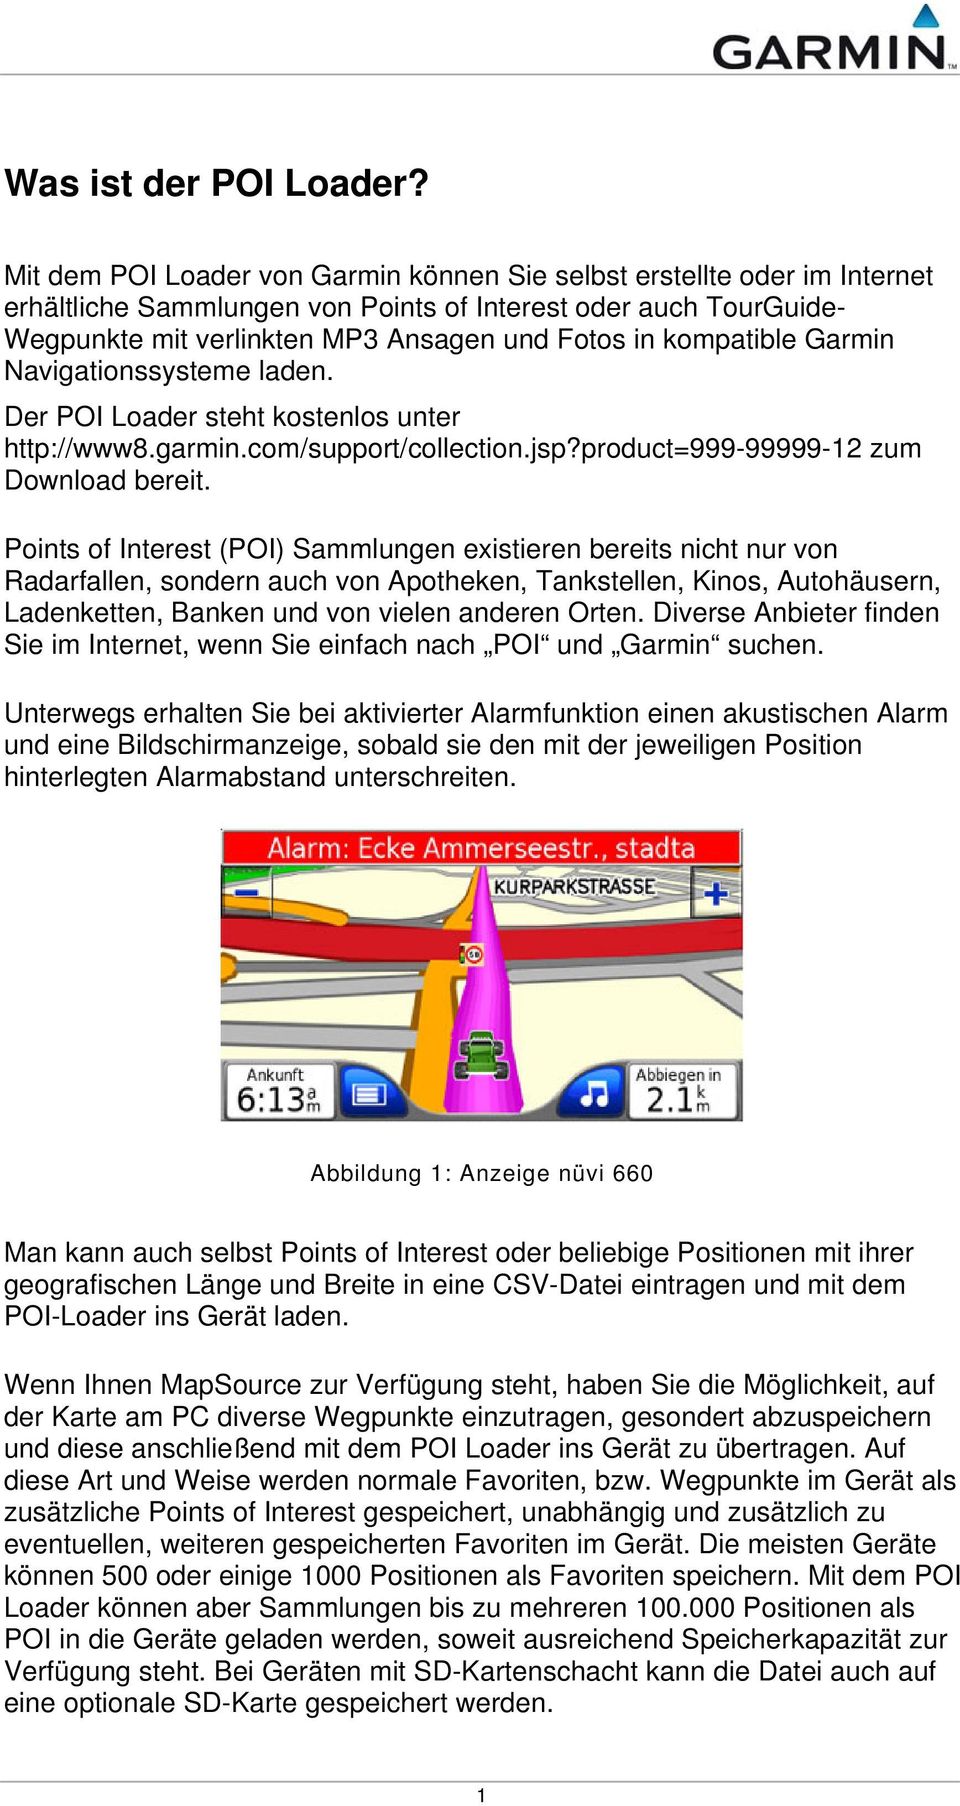 kompatible Garmin Navigationssysteme laden. Der POI Loader steht kostenlos unter http://www8.garmin.com/support/collection.jsp?product=999-99999-12 zum Download bereit.